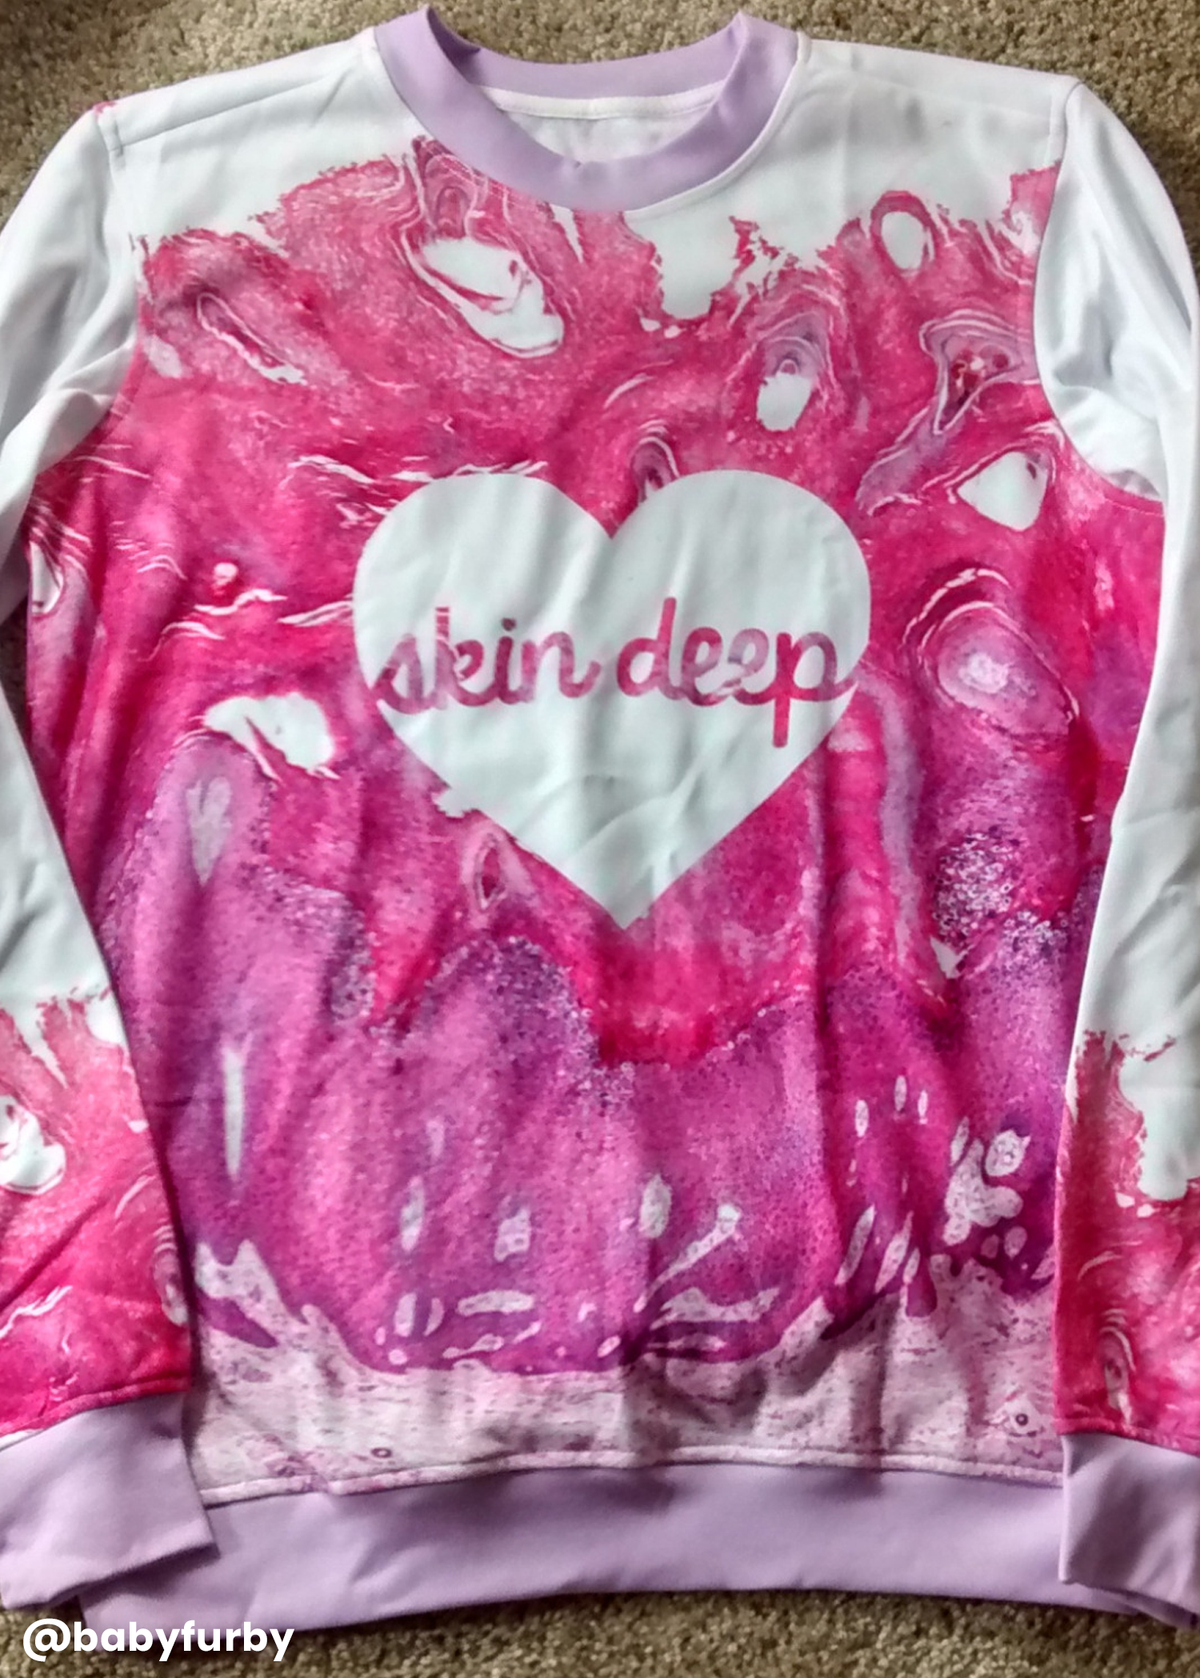 skin deep sweatshirt